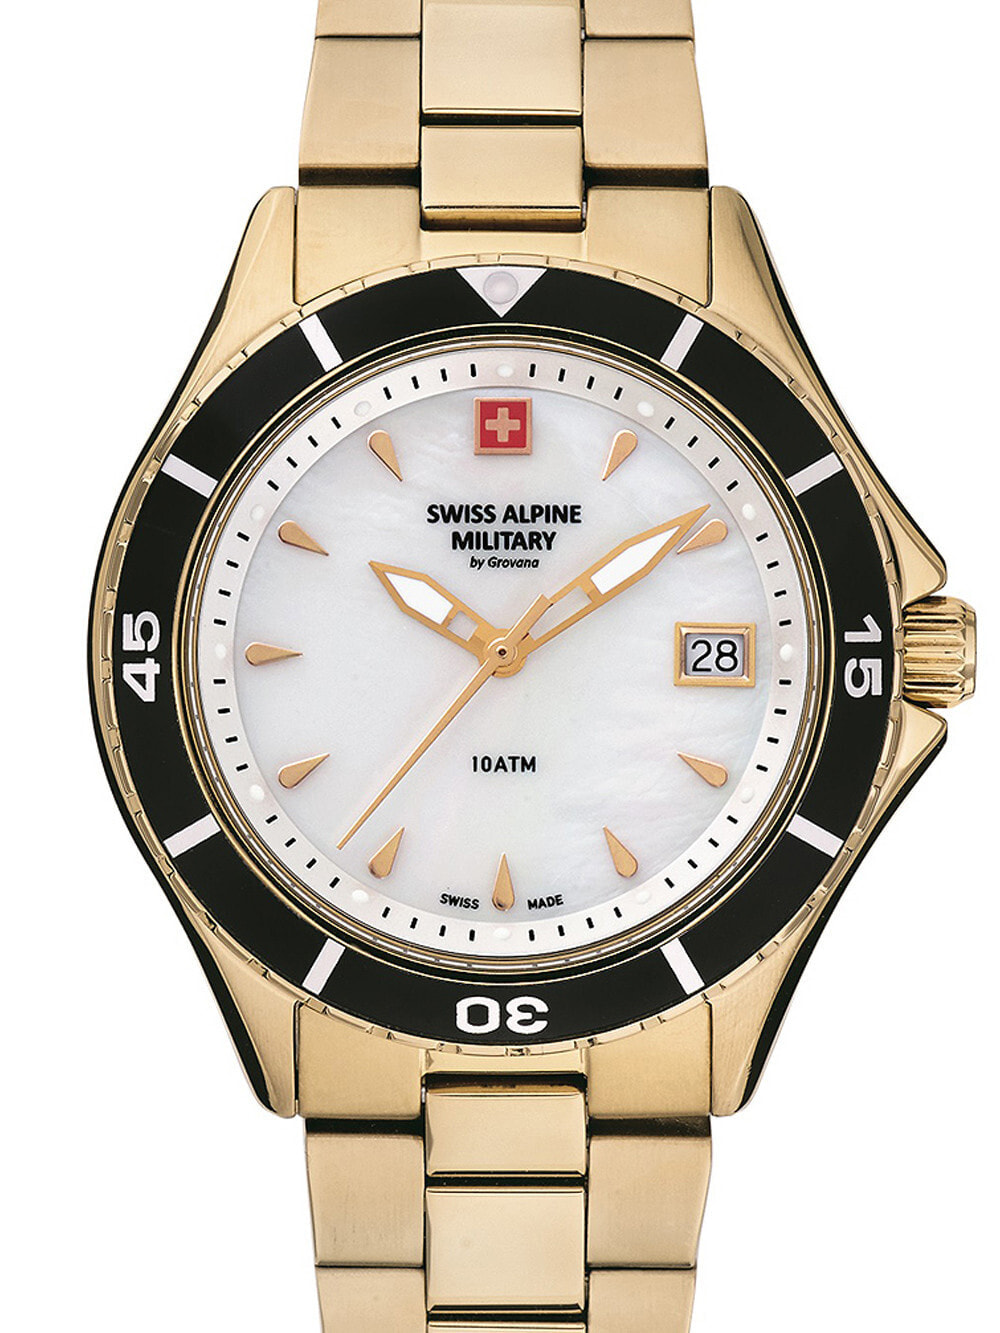 Женские наручные кварцевые часы Swiss Alpine Military  ремешок из нержавеющей стали. Водонепроницаемость-10 АТМ. Прочное, минеральное стекло. Окошко с датой.